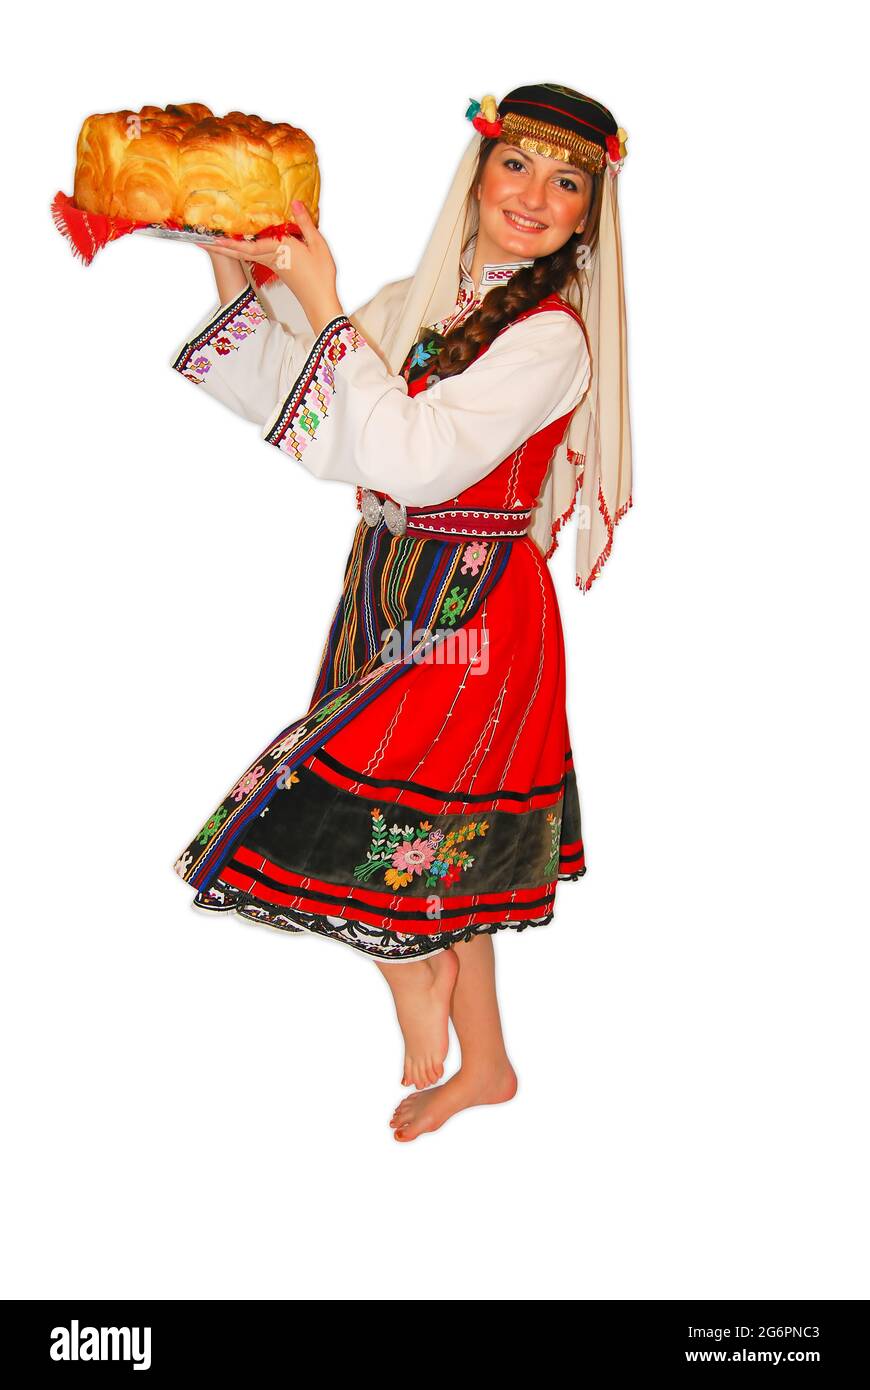 Junge Mädchen Bauer mit traditionellen bulgarischen Folklore-Kostüm und Sauerteig Brot in der Hand Porträt isoliert Stockfoto